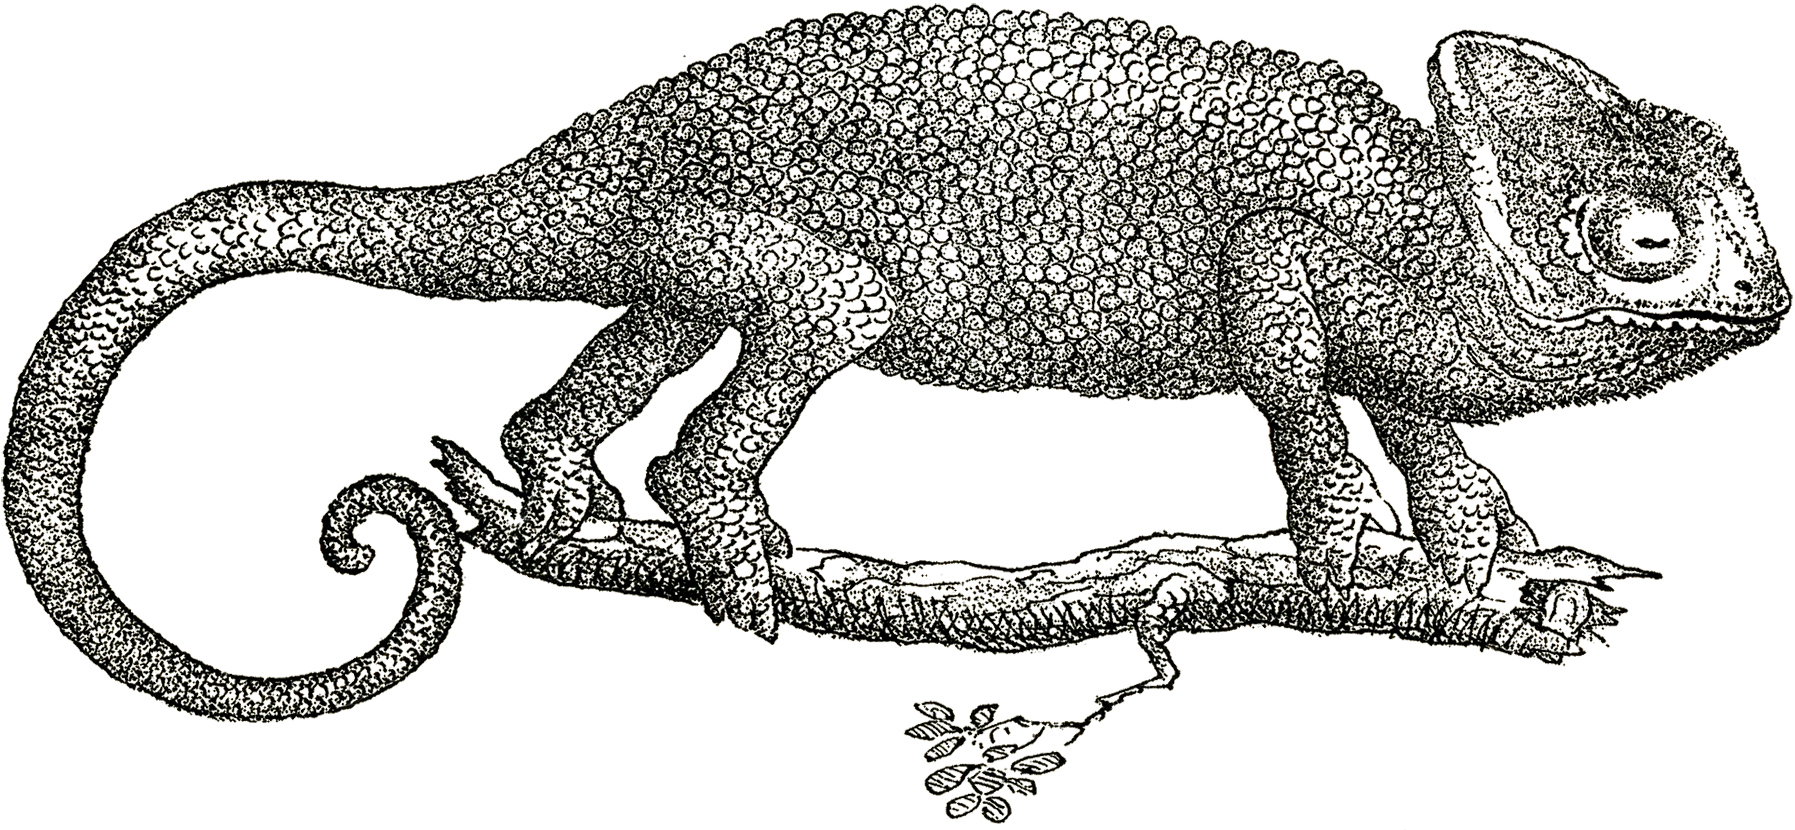 Chameleon Drawing Detailed Sketch